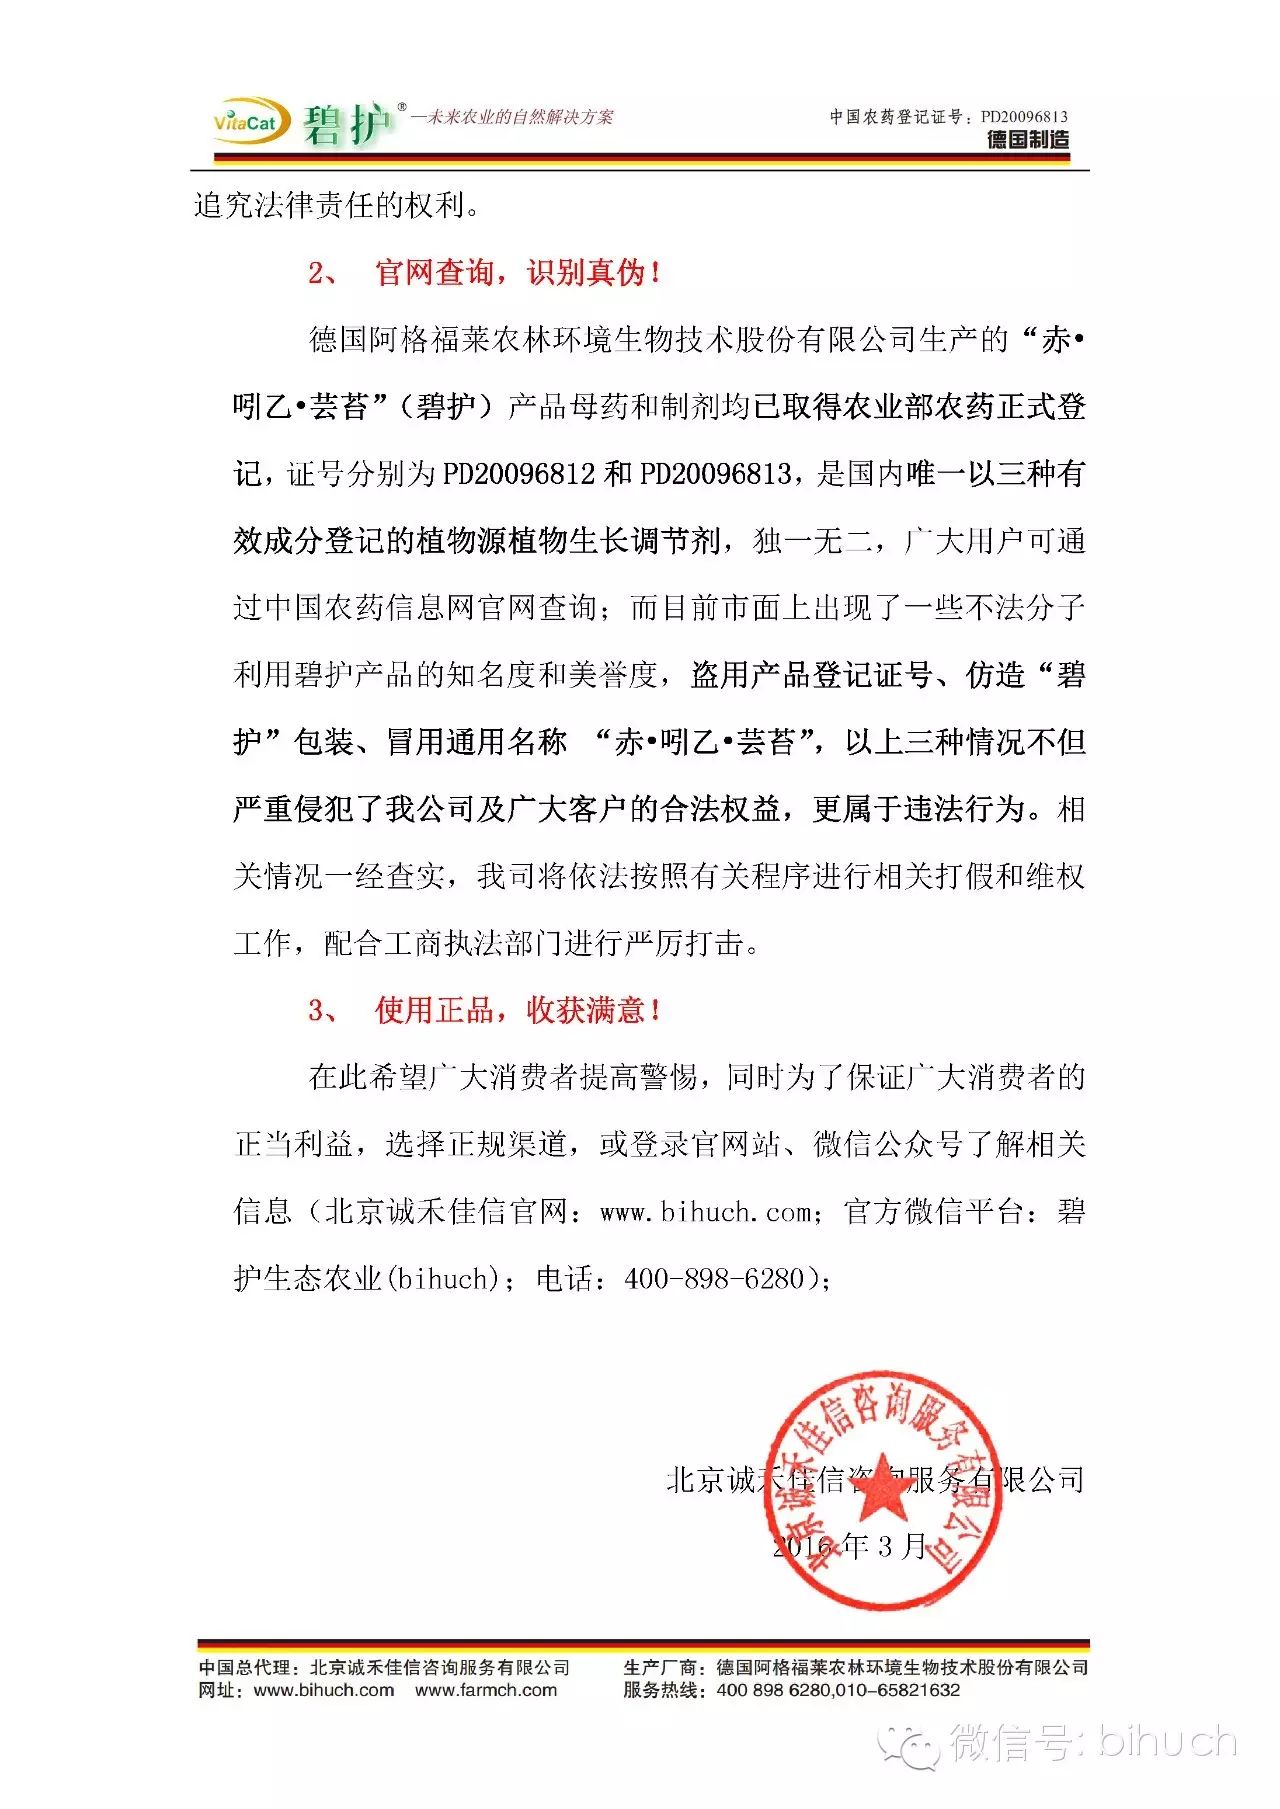 北京诚禾佳信发表声明严厉打击侵权行为